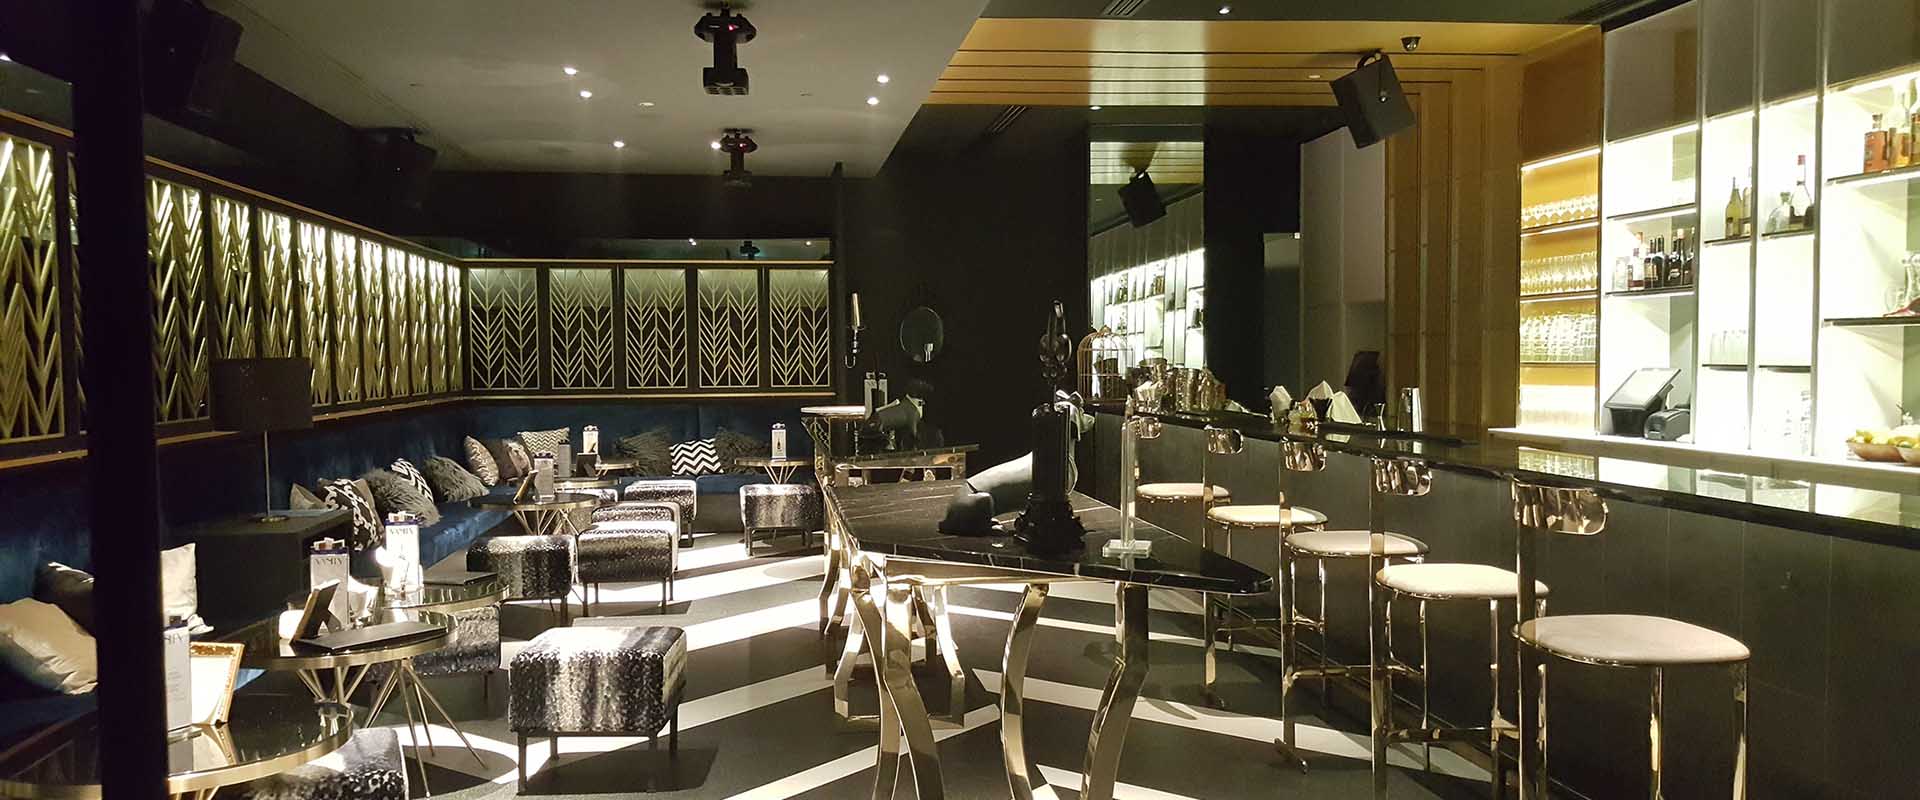 F&Amp;B Restaurant Interior Design Singapore